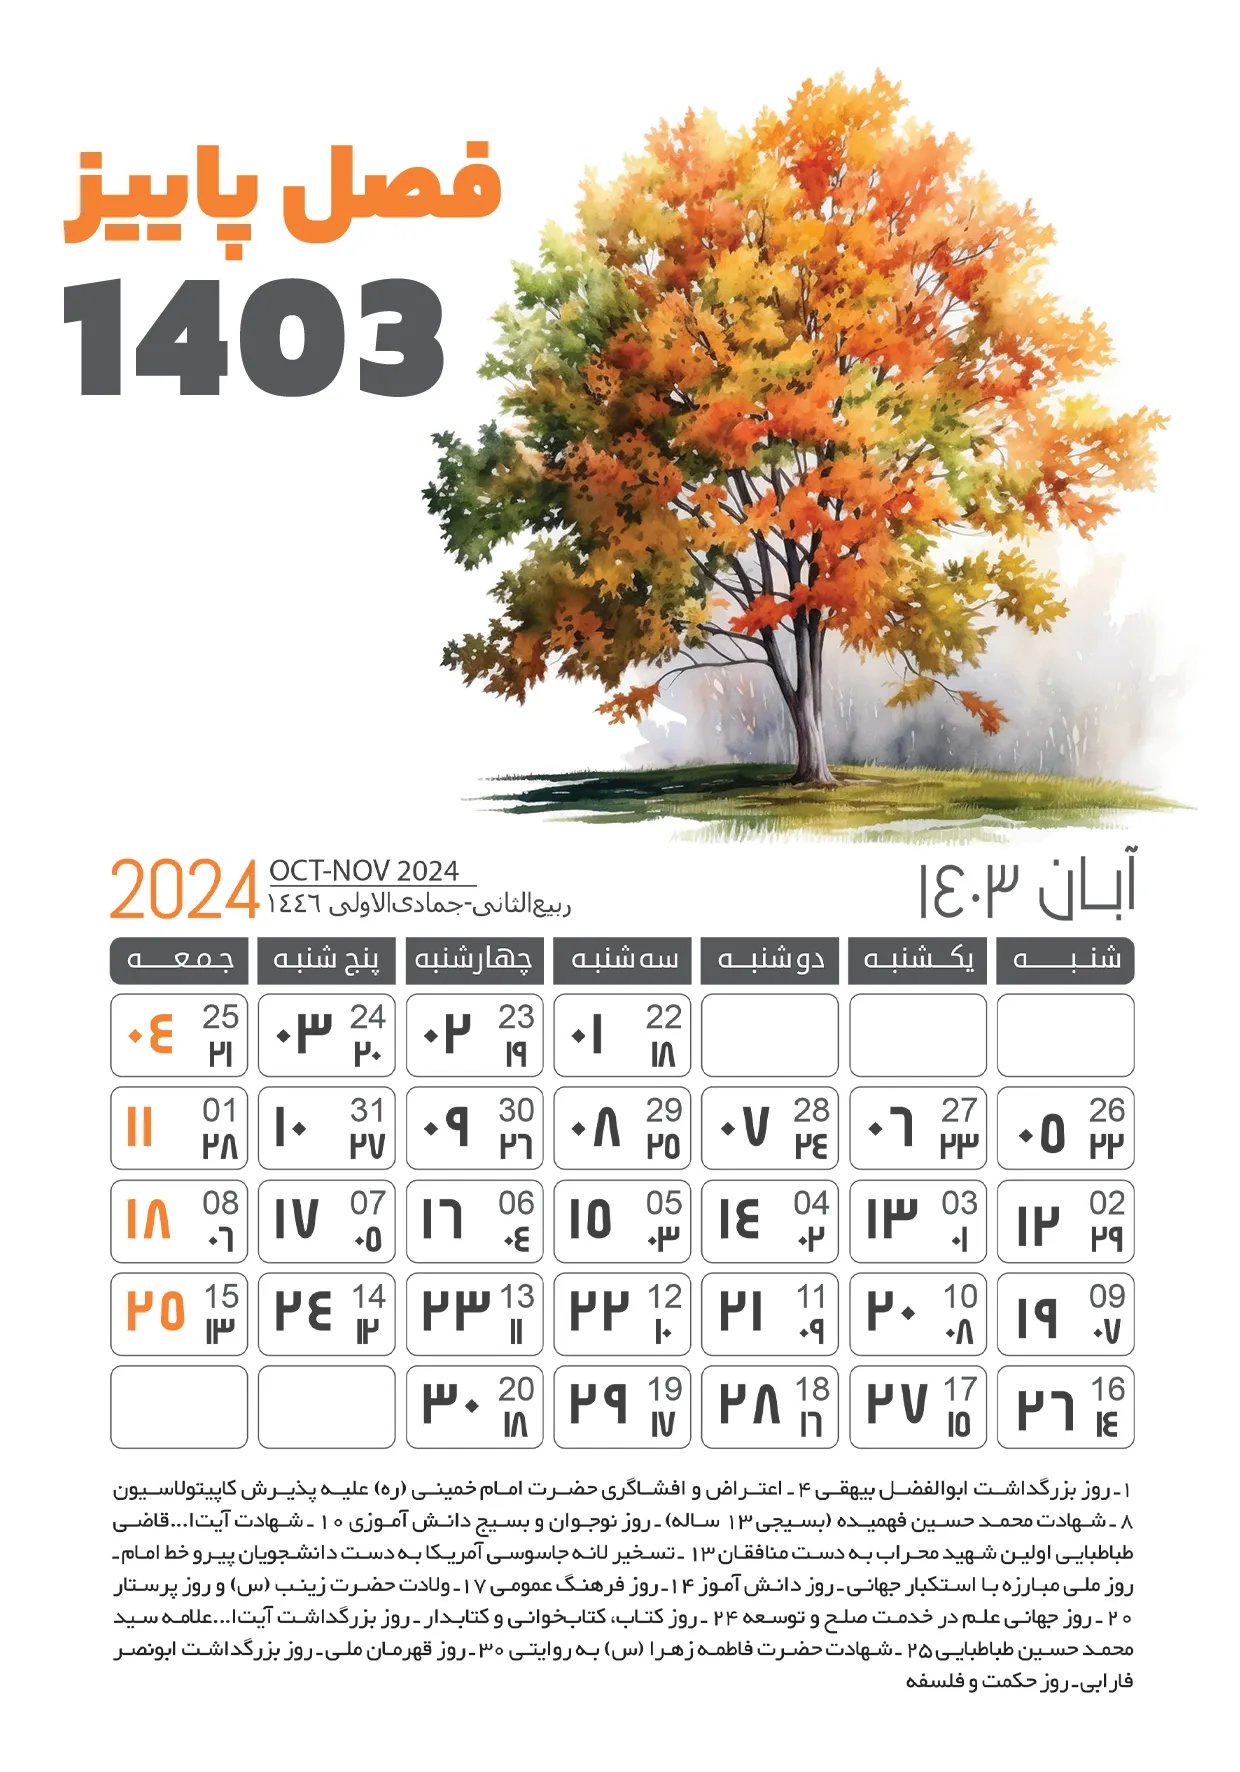 دانلود طرح لایه باز تقویم 1403 آبان ماه (فصل پاییز)